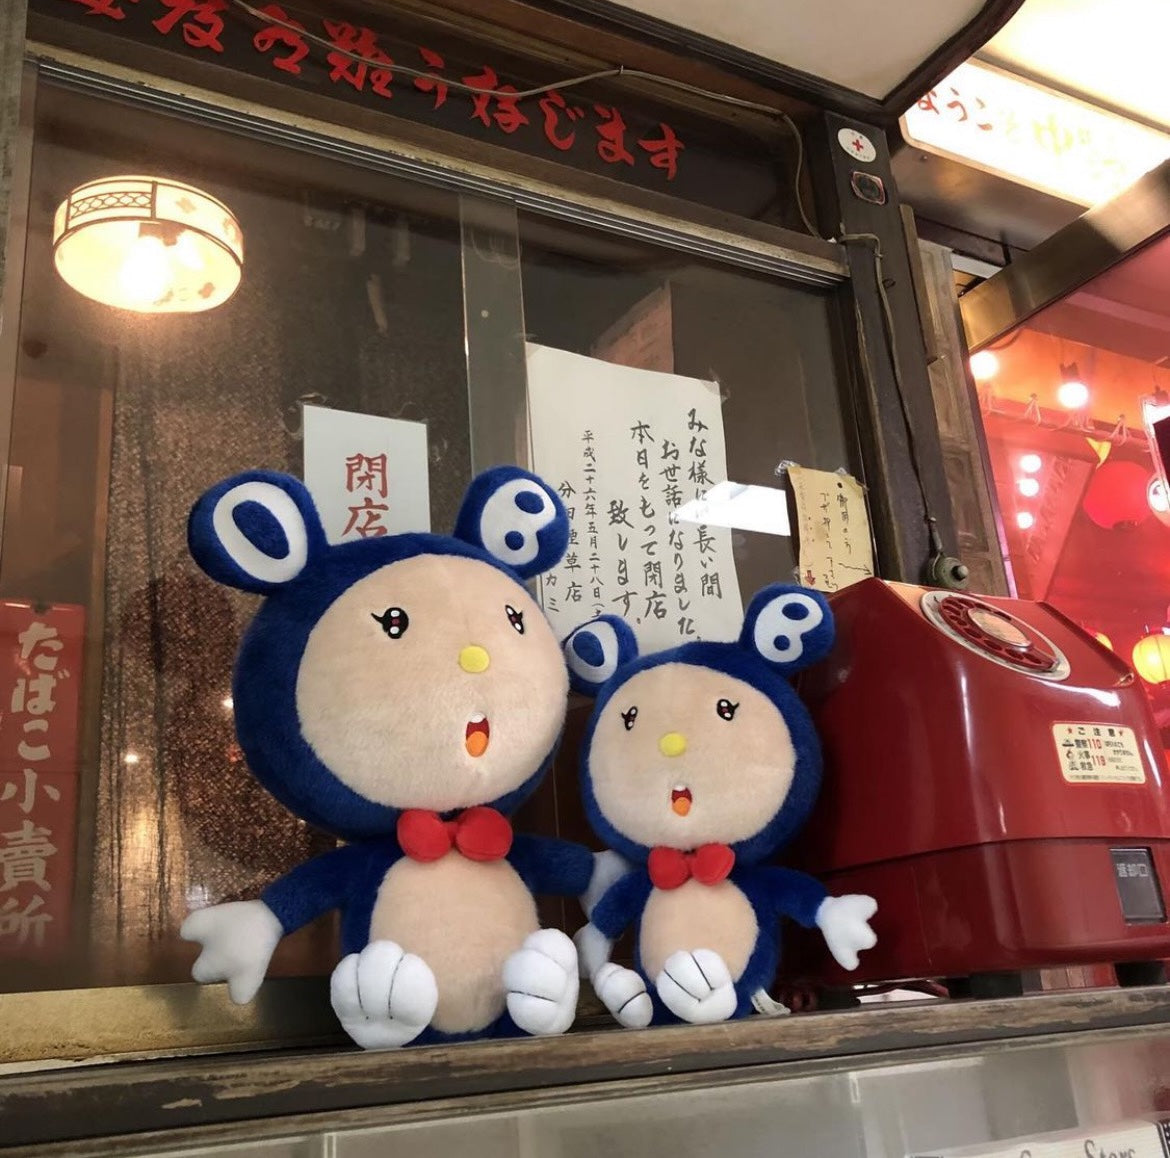 村上隆Takashi Murakami 熊猫玩偶蓝 SEATED MR. DOB PLUSH DOLL (BLUE)